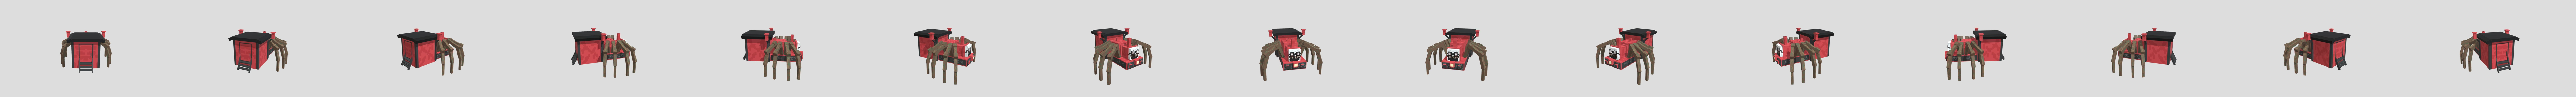 Choo Choo Charles - minecraft edition - Download Free 3D model by  omegaru010 [20acefc] - Sketchfab